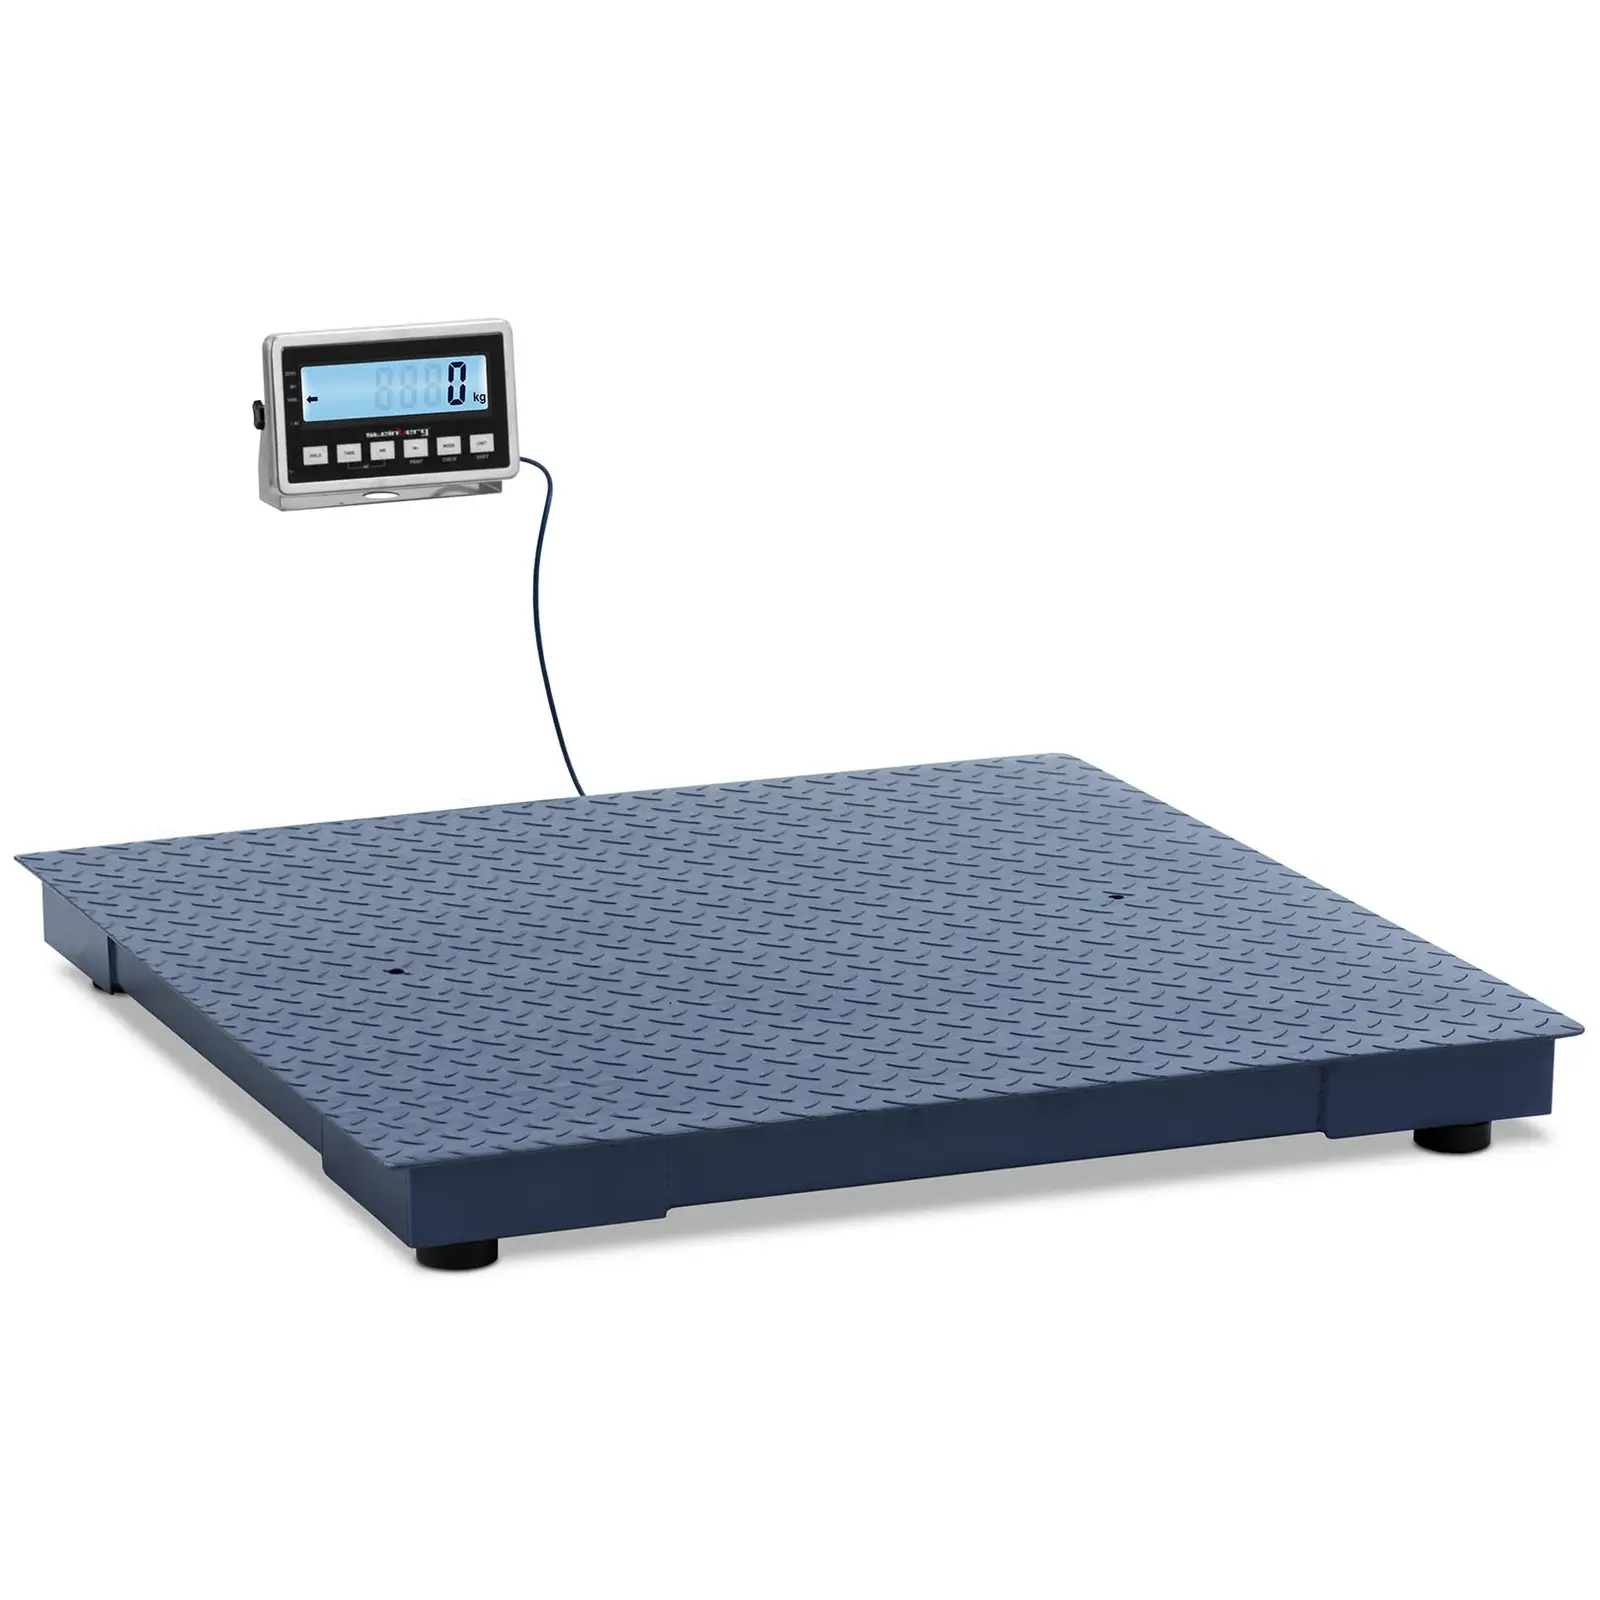 Floor Scale - 1000 kg / 0.2 kg - 1000 x 1000 mm - LCD